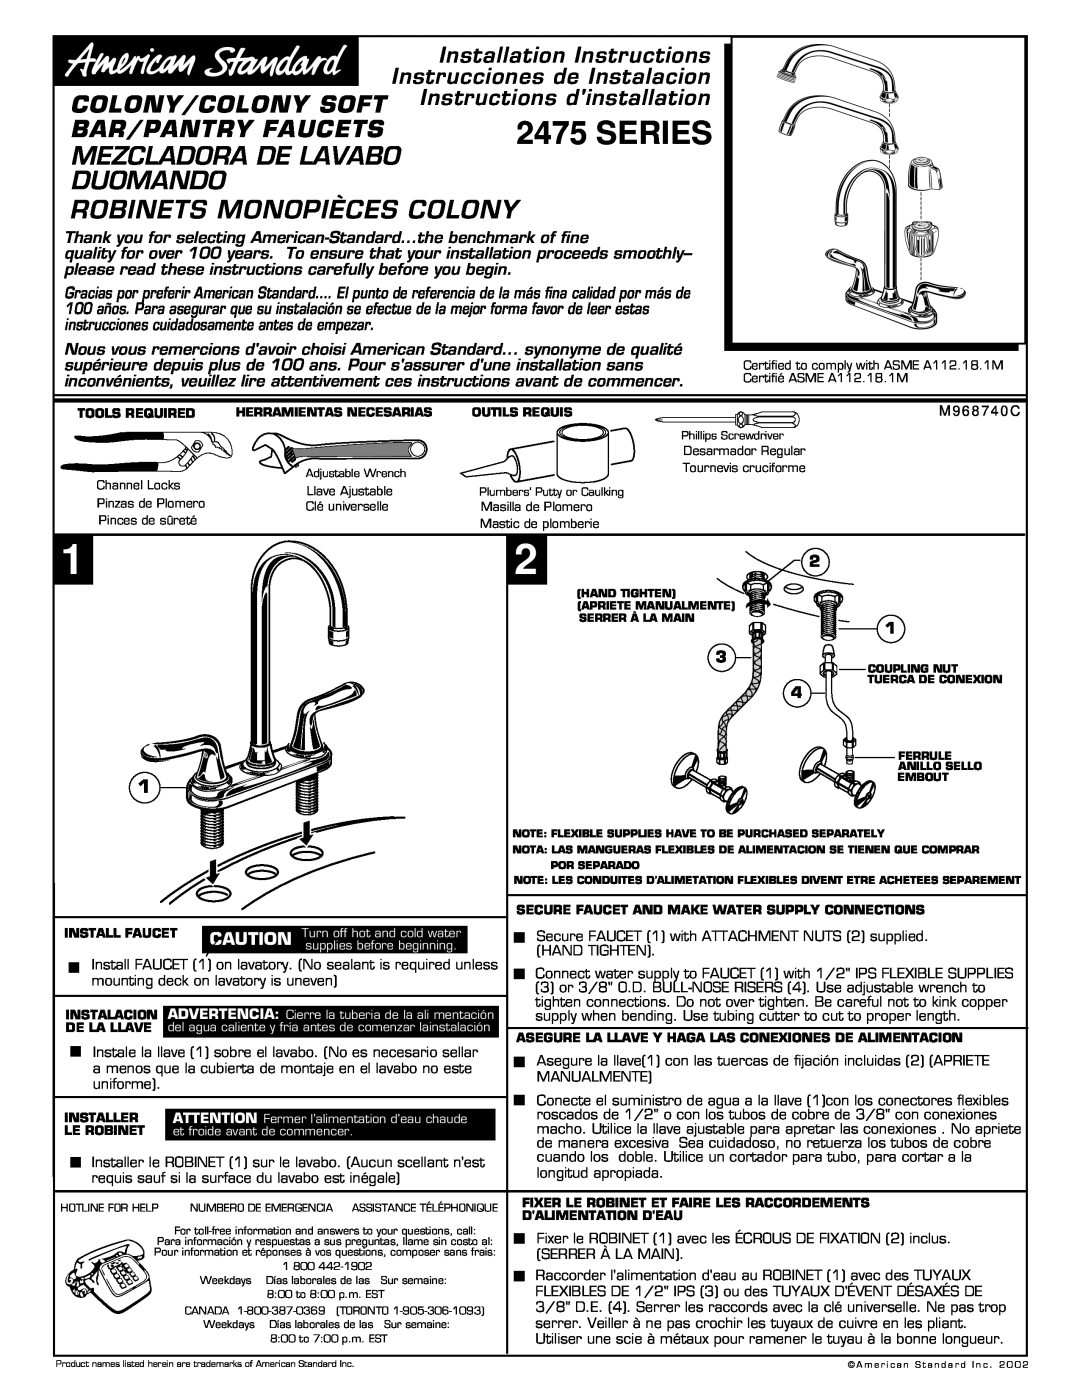 American Standard 2475 Series installation instructions Mezcladora De Lavabo Duomando, Robinets Monopièces Colony 